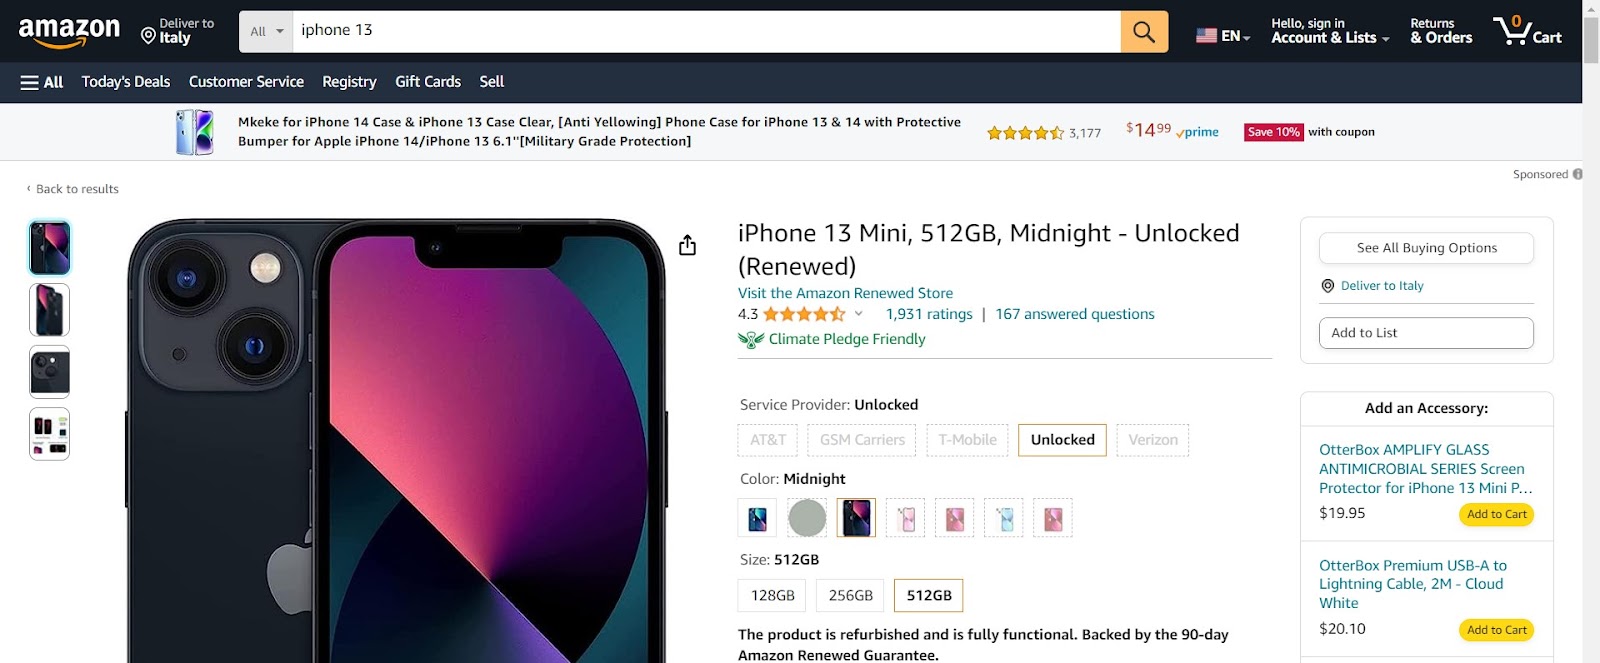 Amazon product description